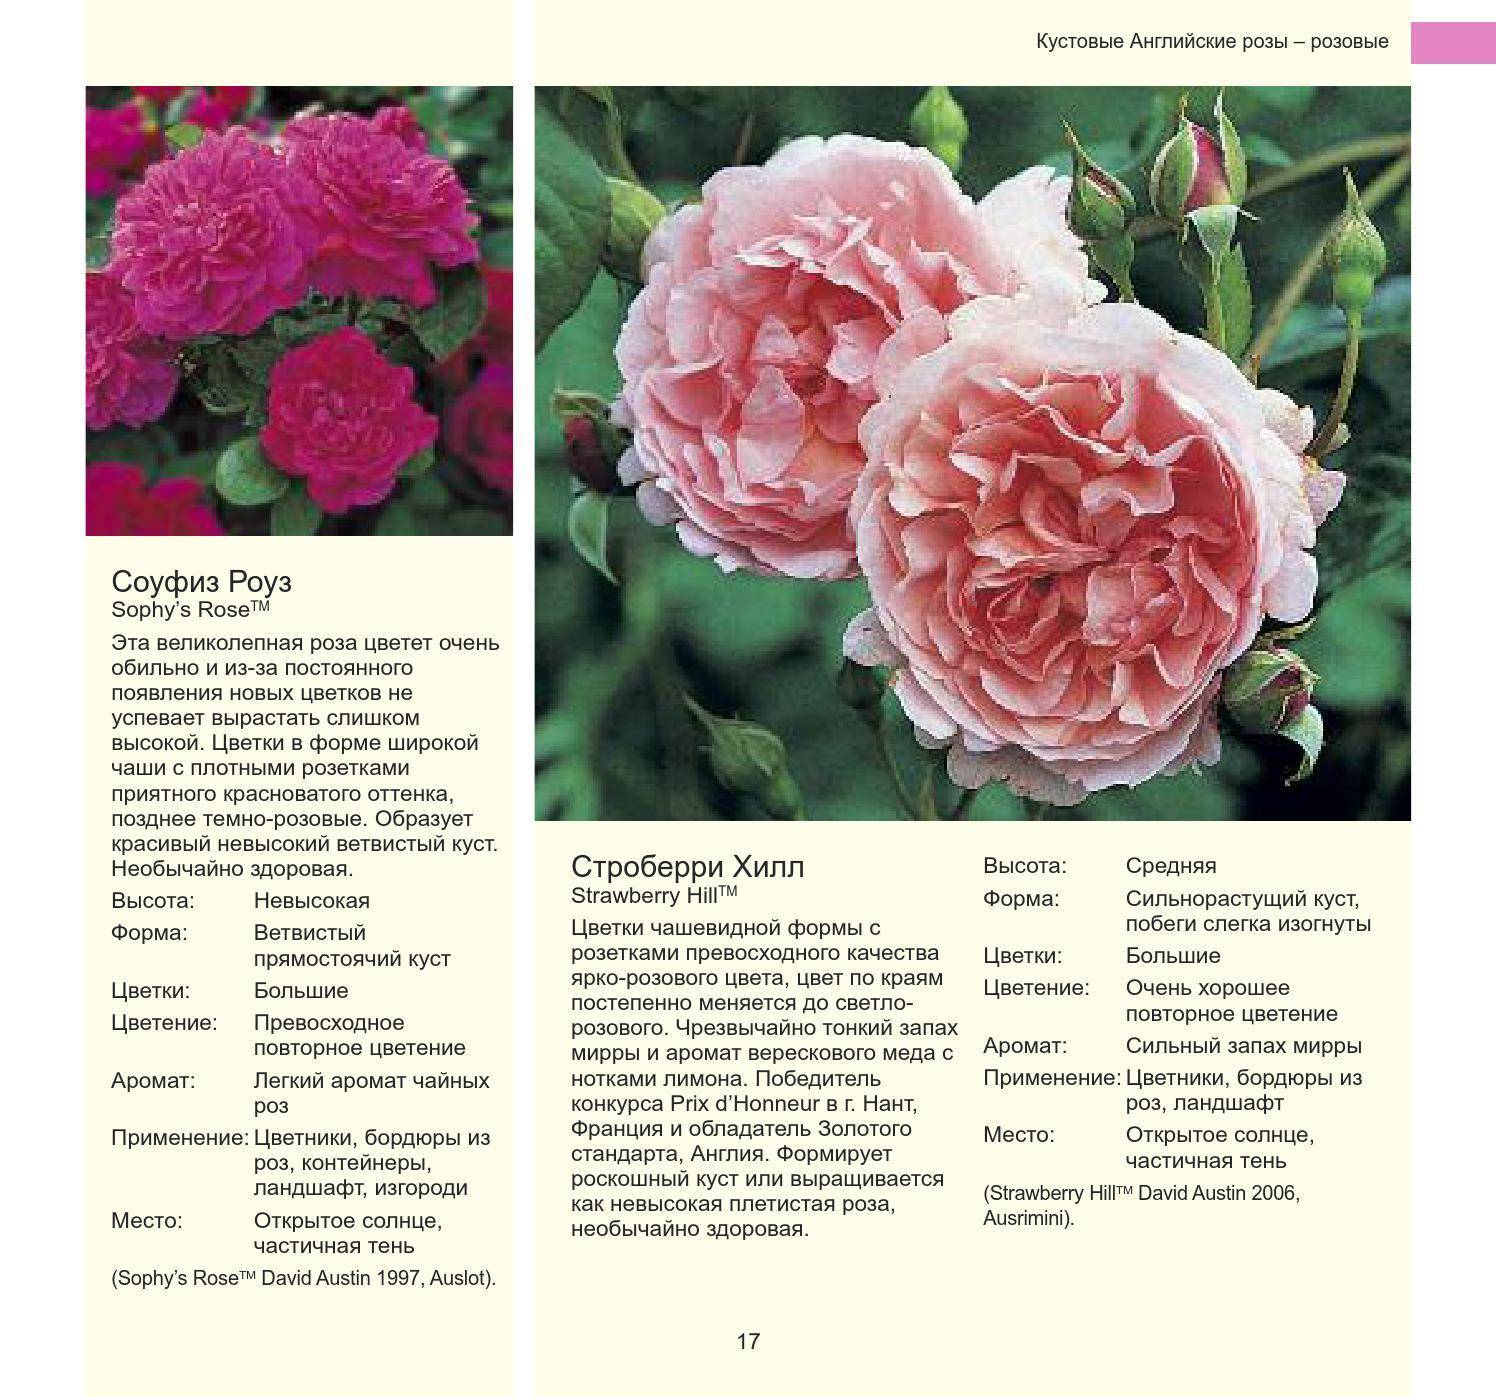 Виды и сорта роз - фото, названия и описания (каталог)